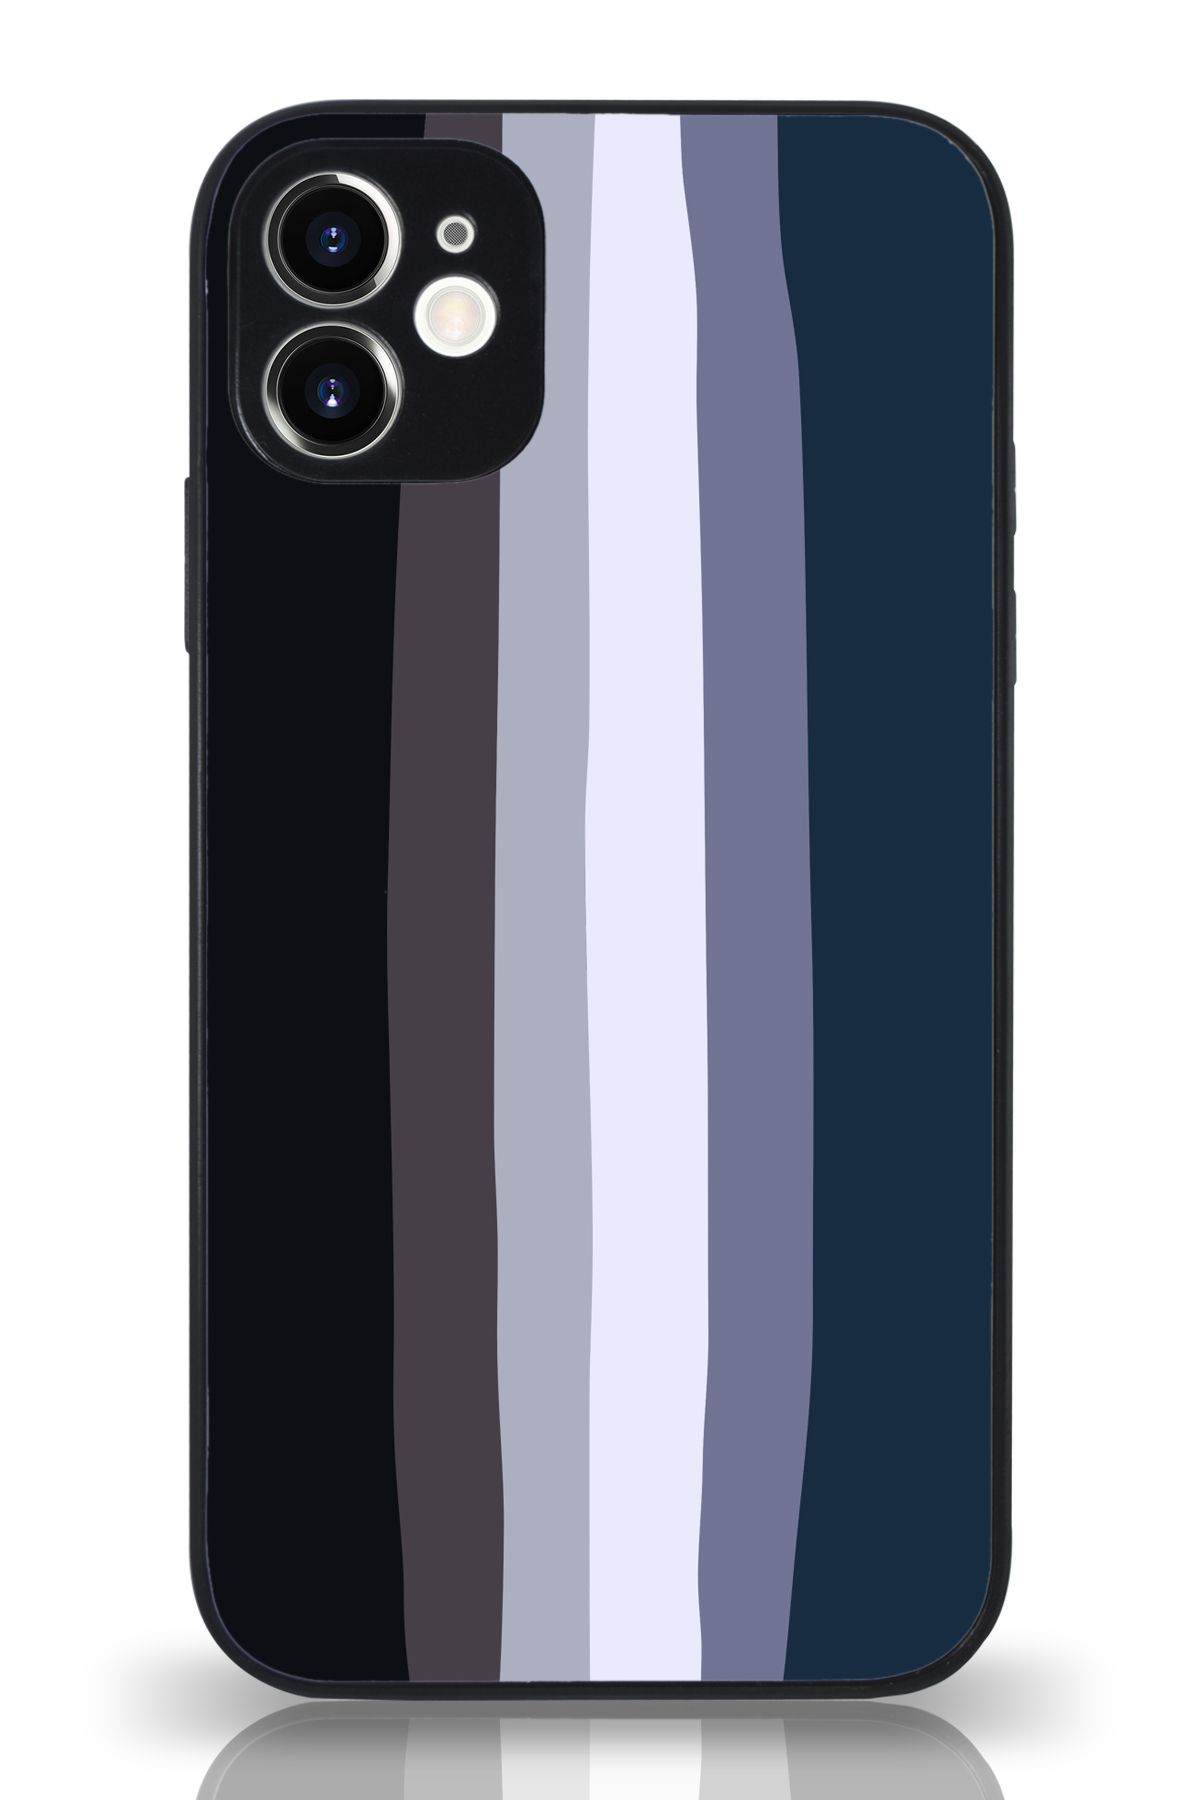 PrintiFy Apple iPhone 11 Kamera Korumalı Mavi Gökkuşağı Desenli Cam Kapak Siyah